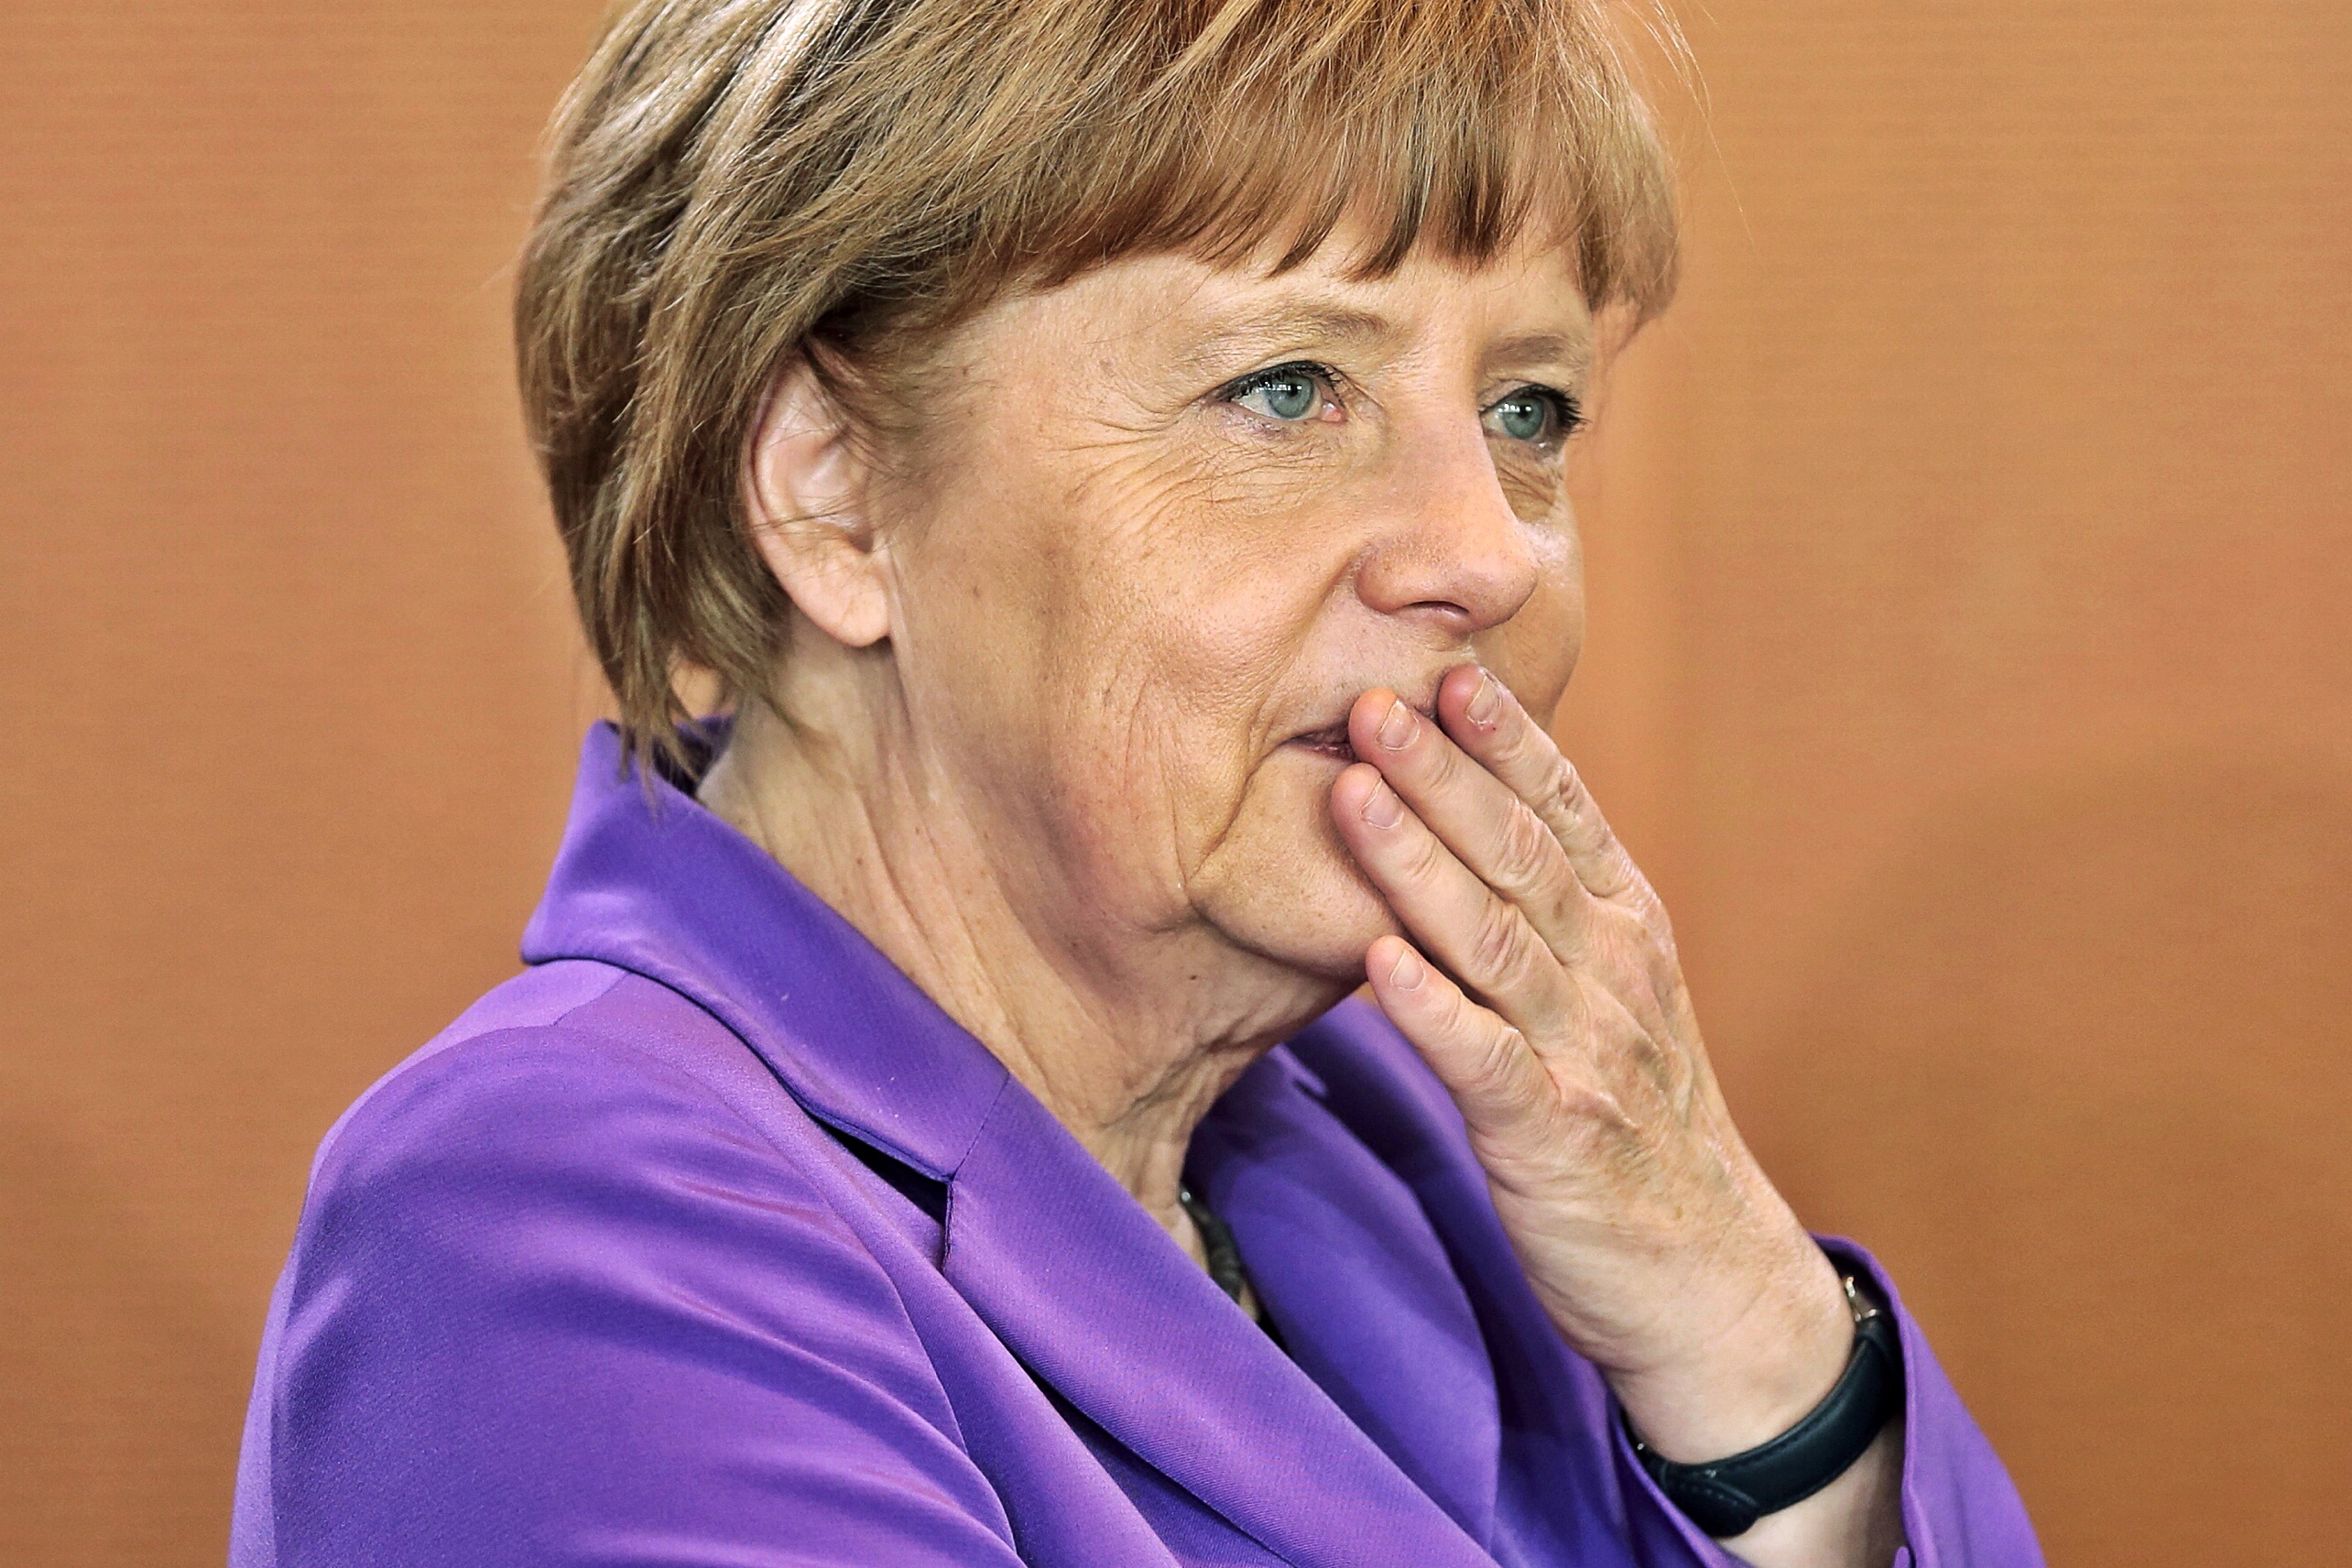 Germania verso Grosse Koalition. Csu: “Con Spd migliore opzione”